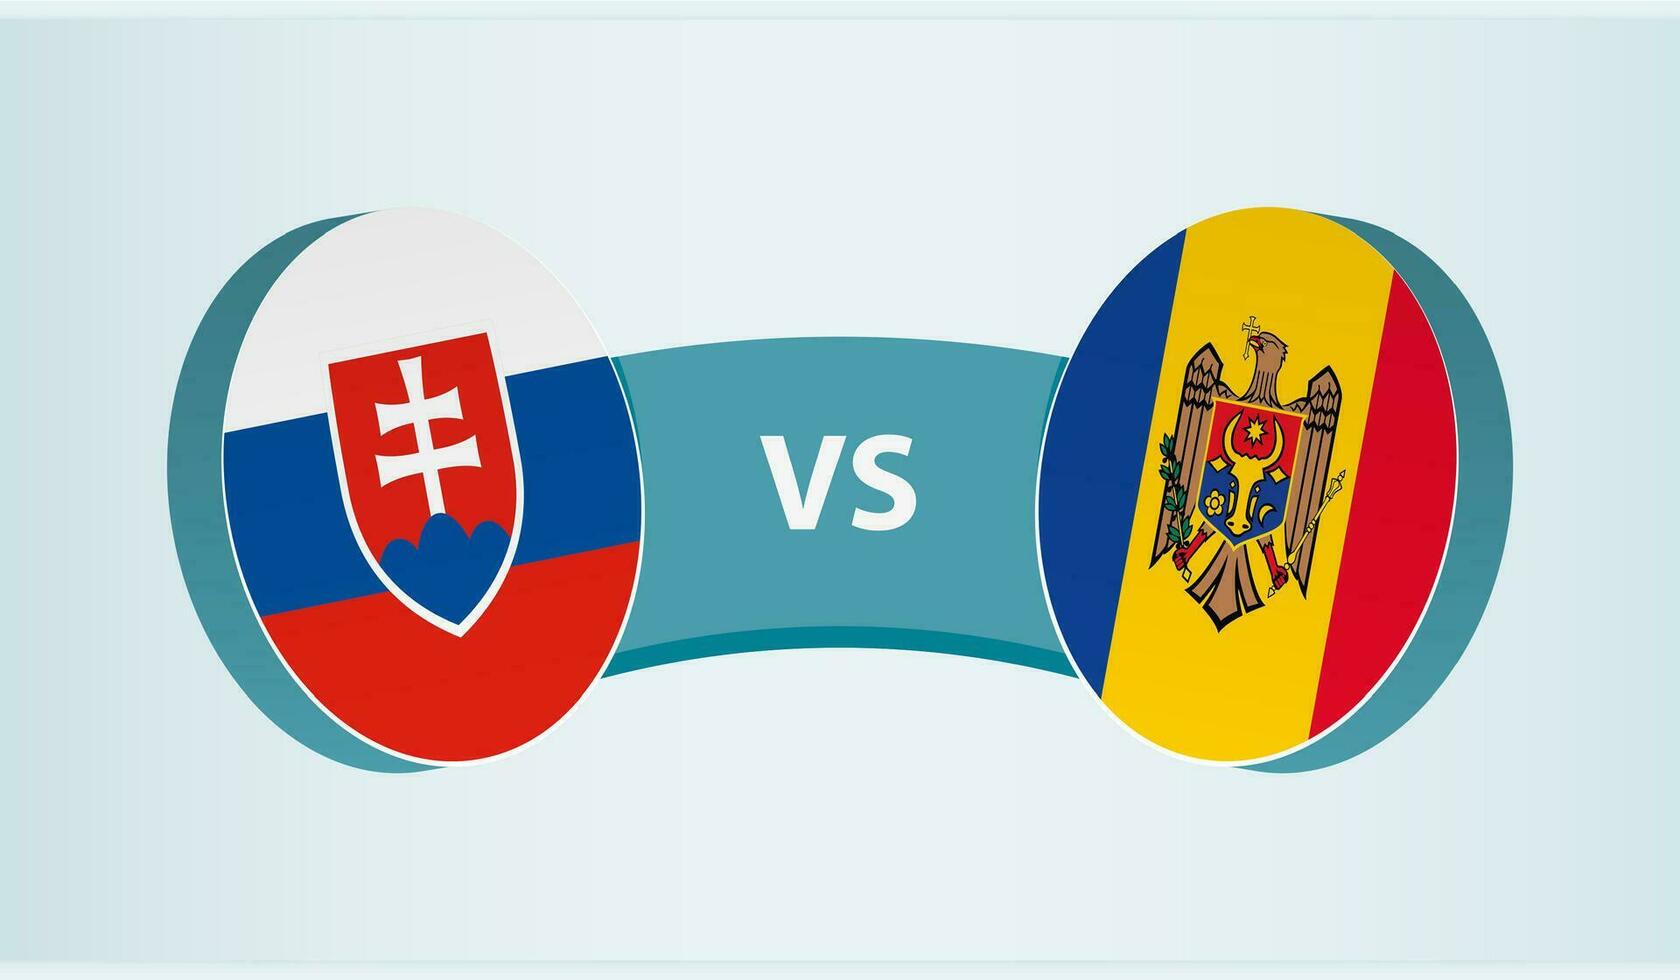 slovakia mot moldavien, team sporter konkurrens begrepp. vektor